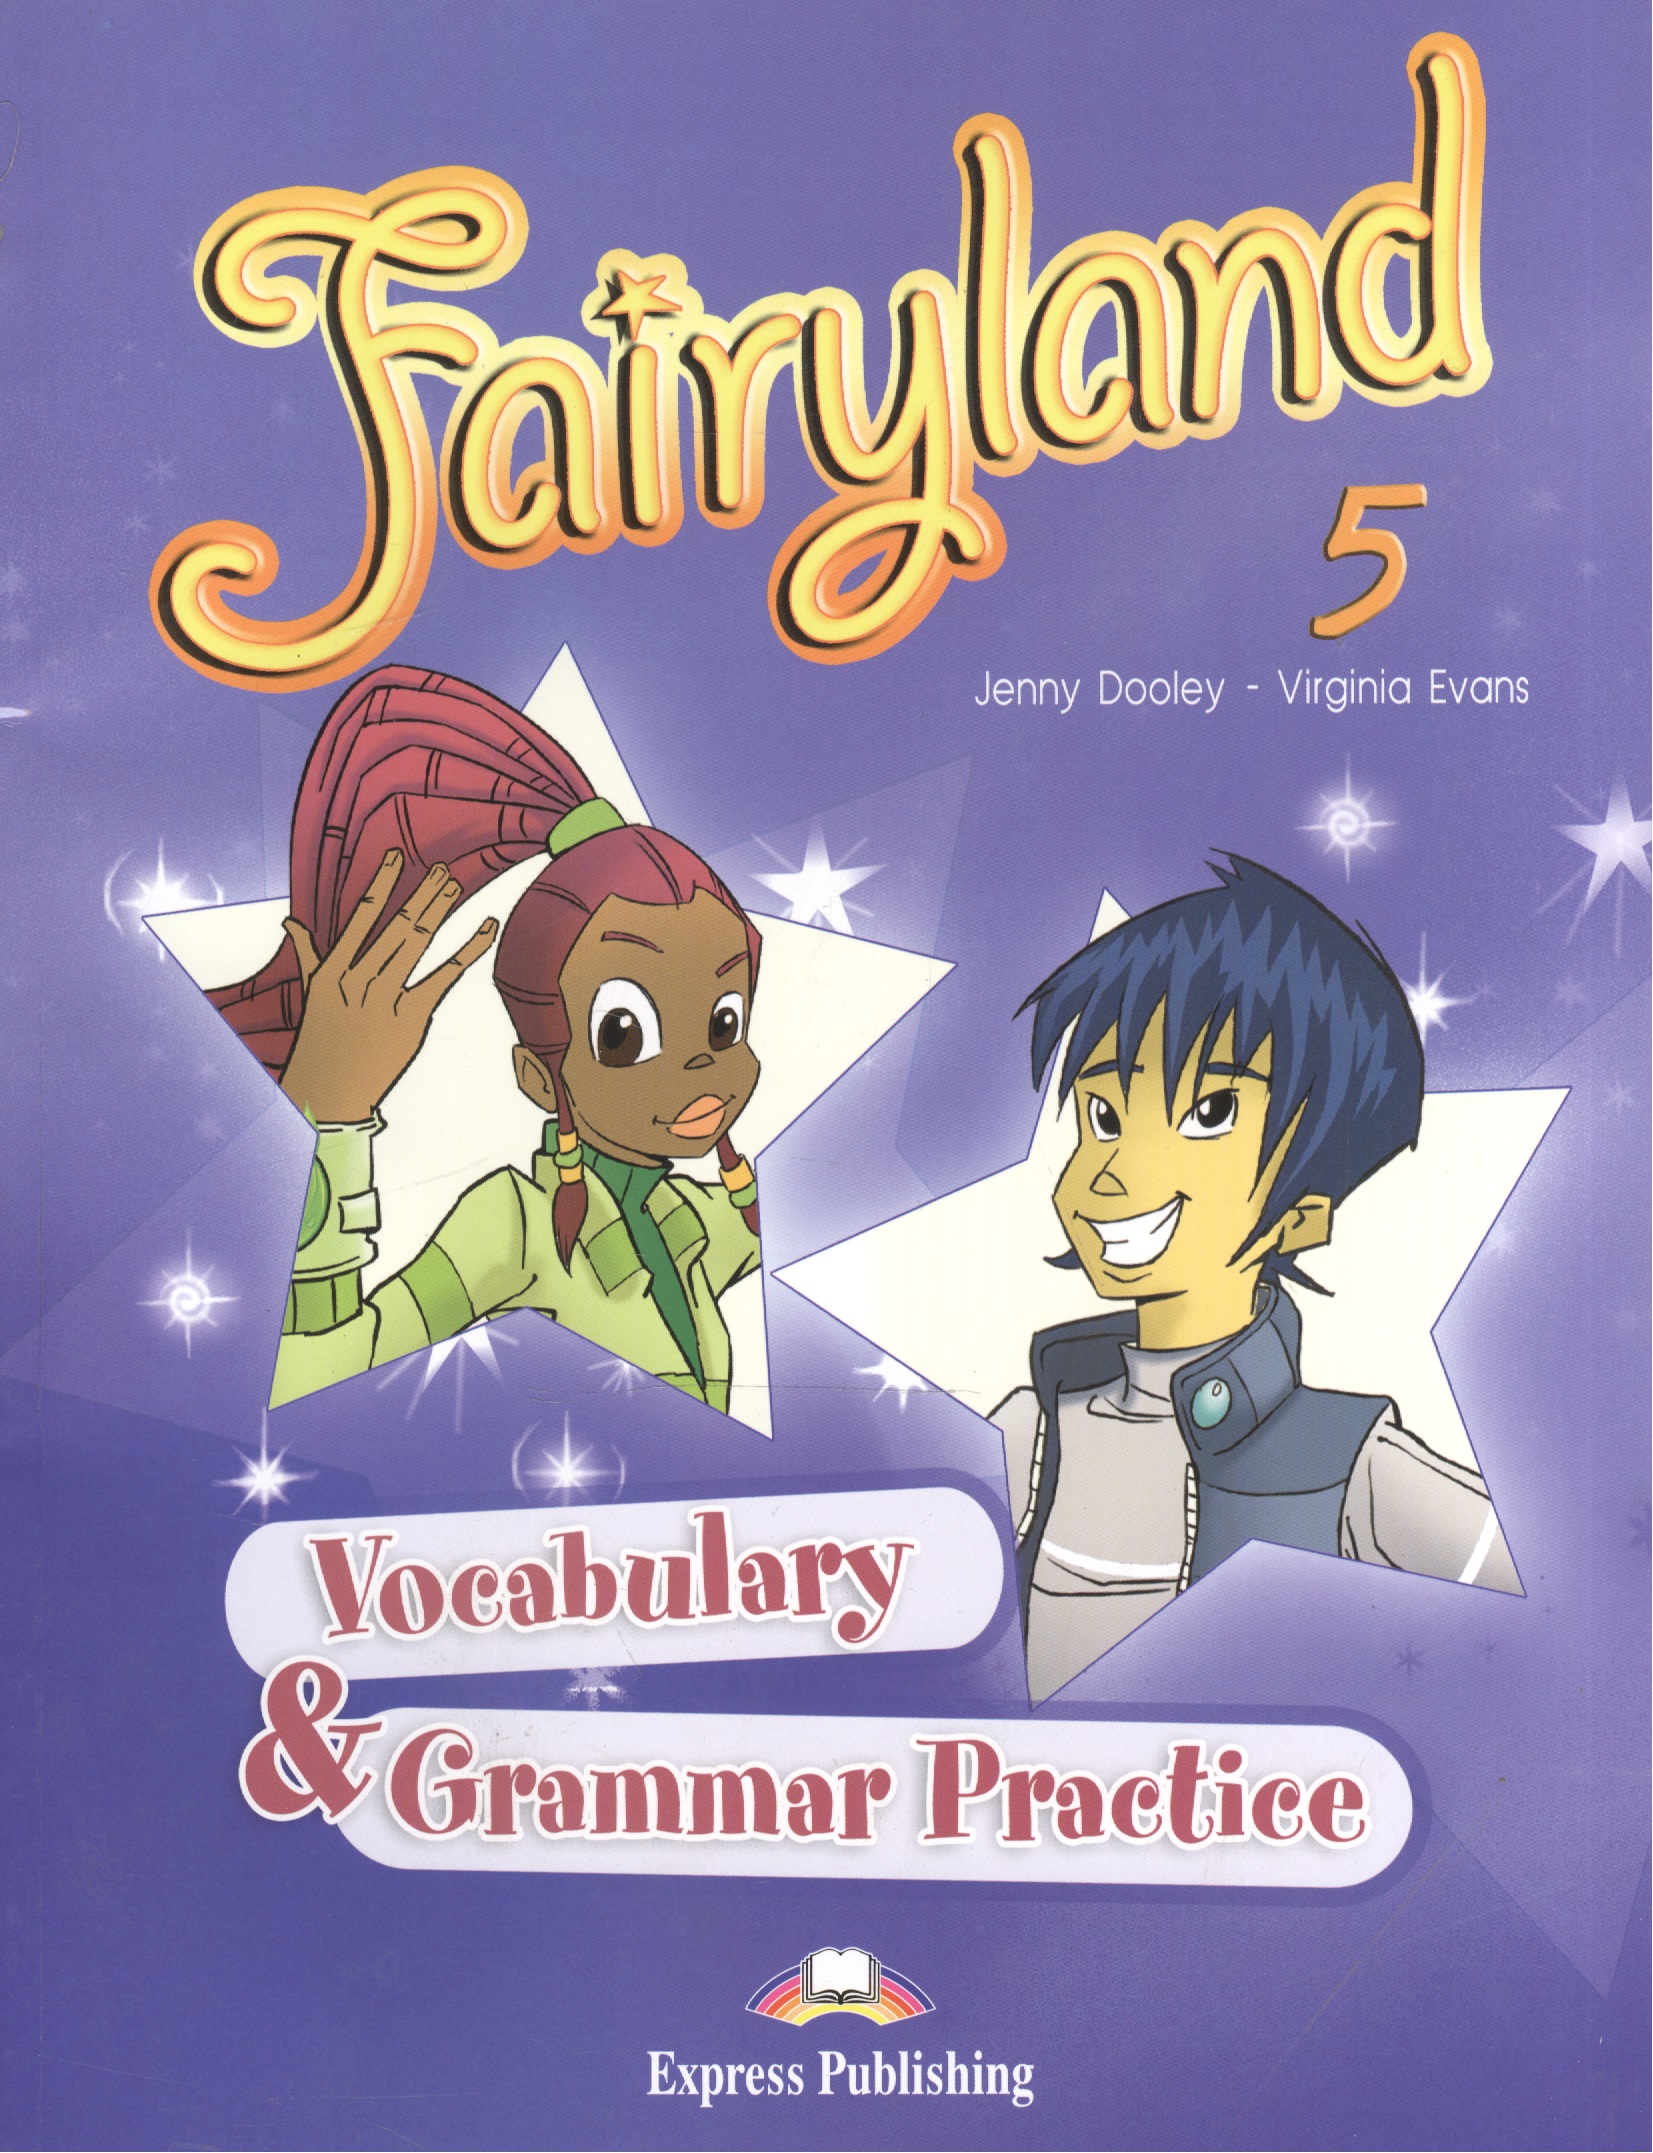 Эванс Вирджиния Fairyland 5. Vocabulary & Grammar Practice. Сборник лексических и грамматических упражнений